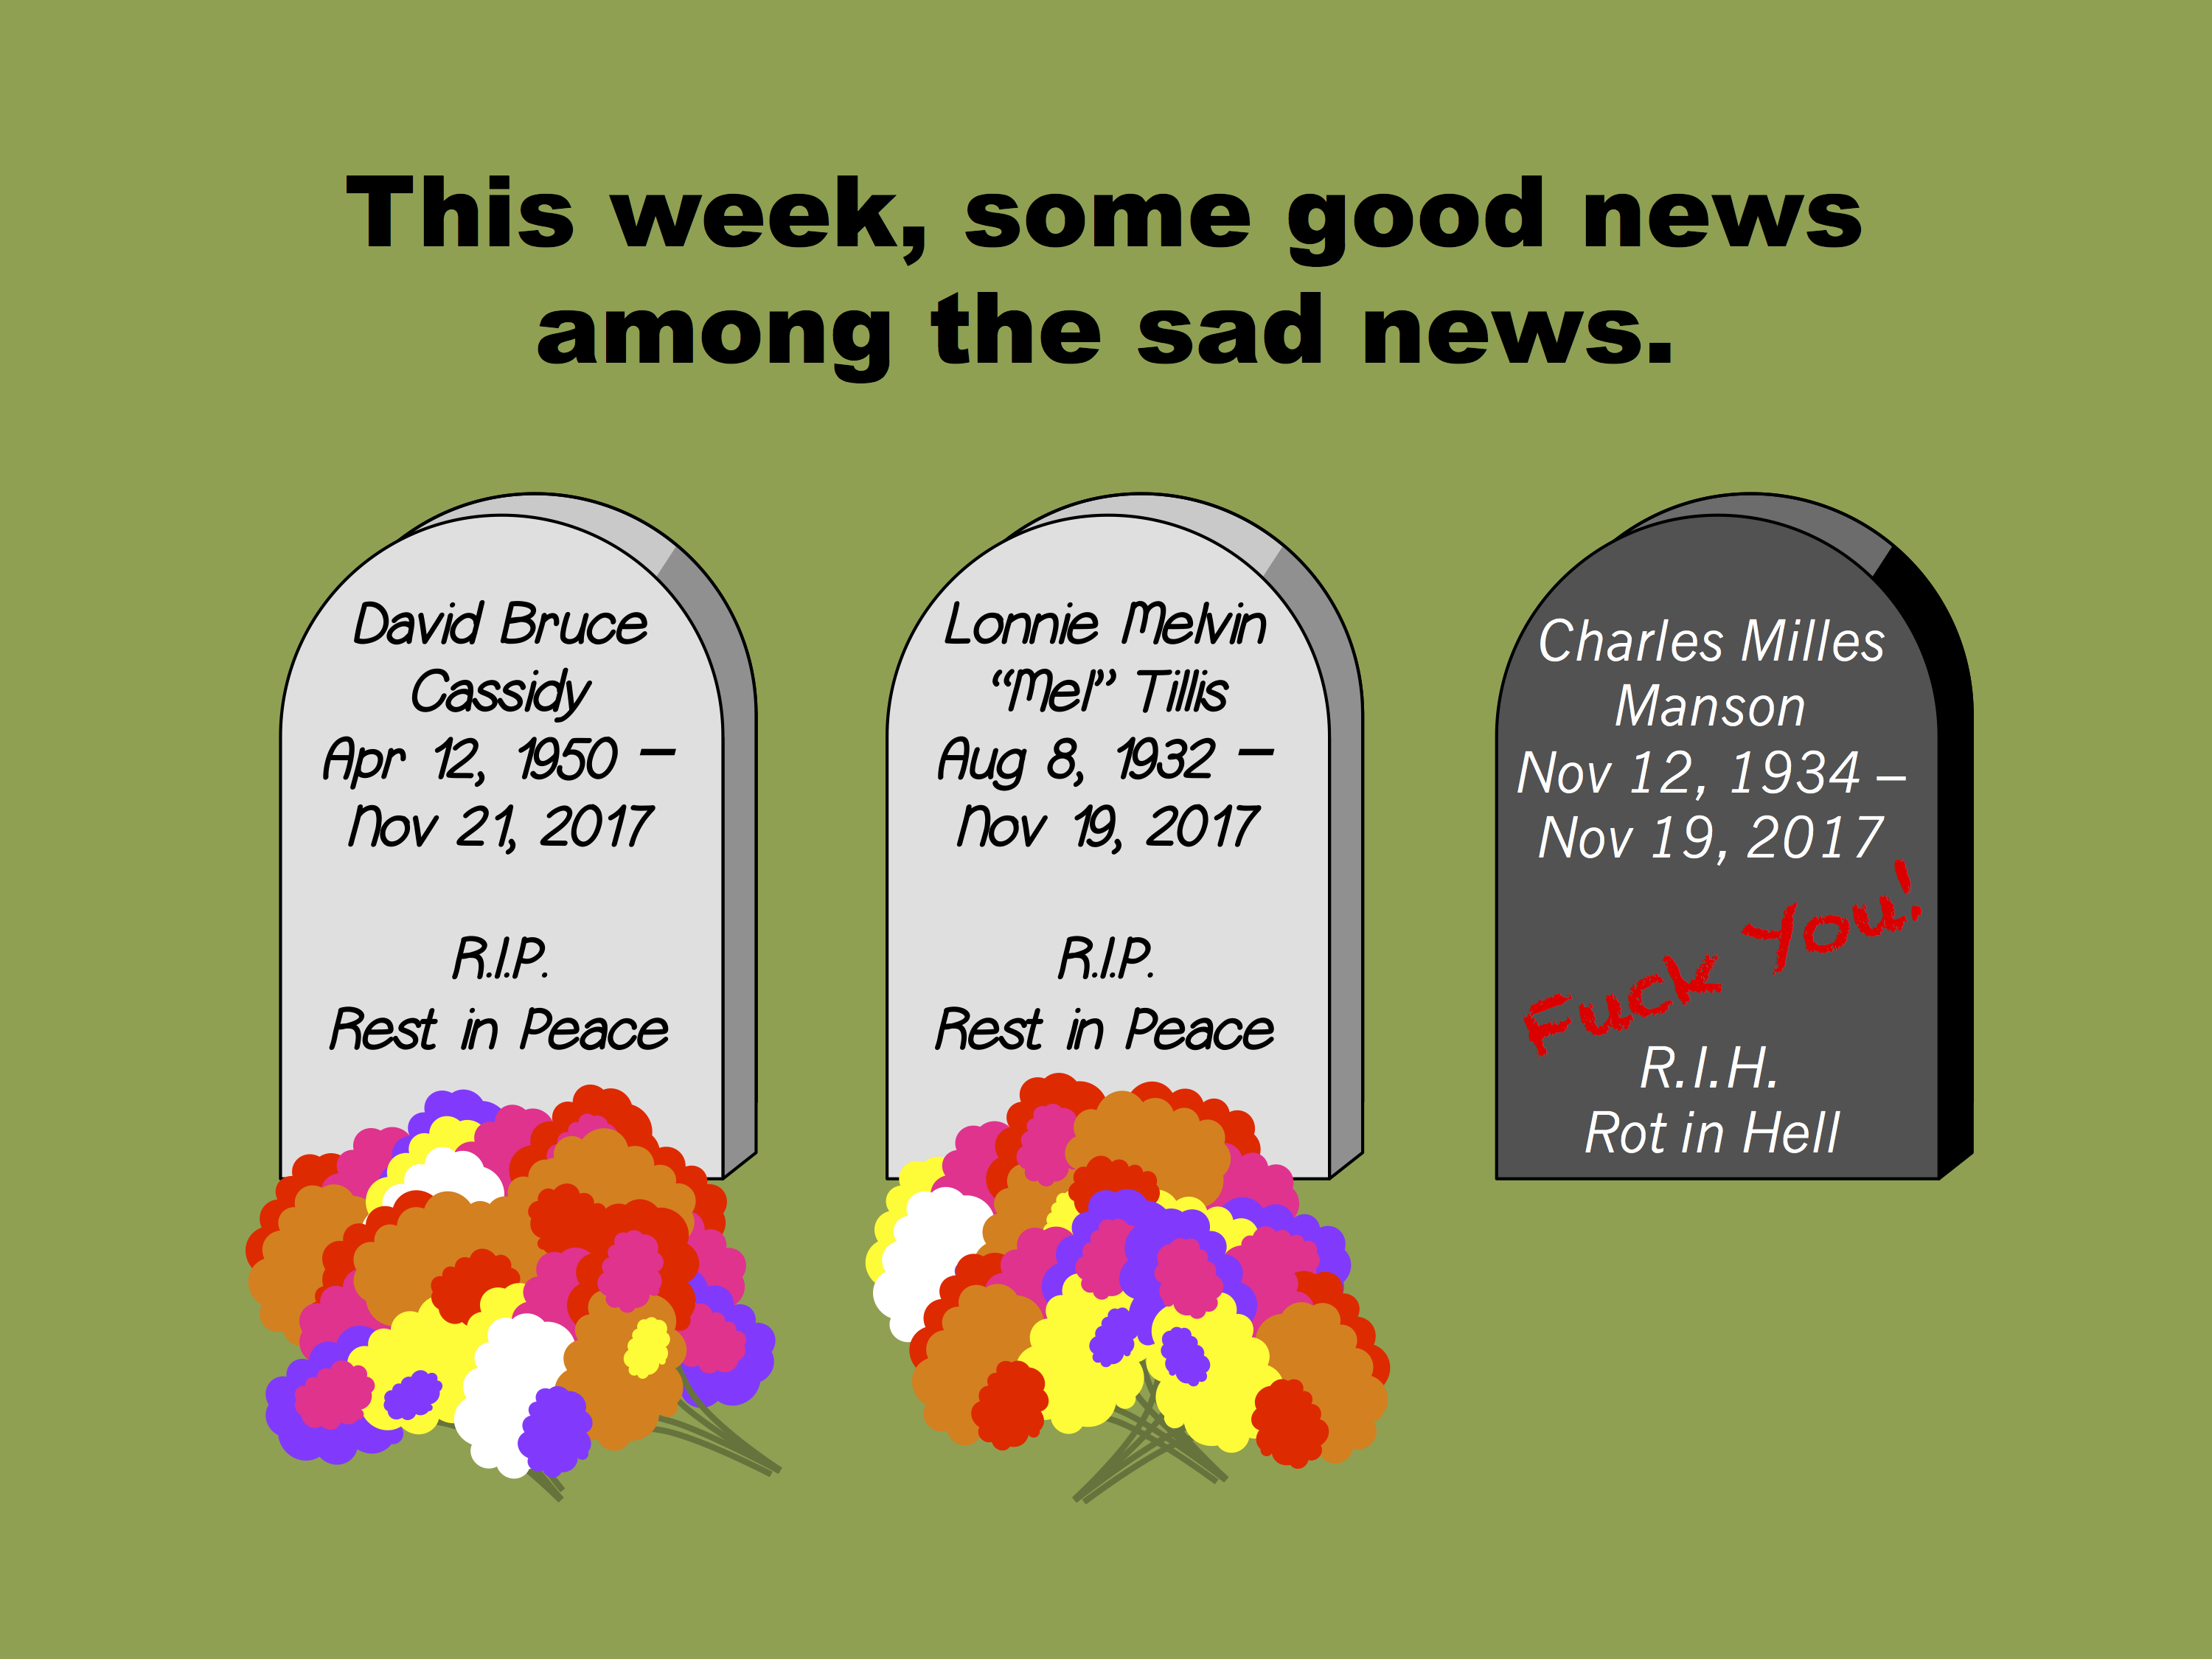 This week, some good news among the sad news.